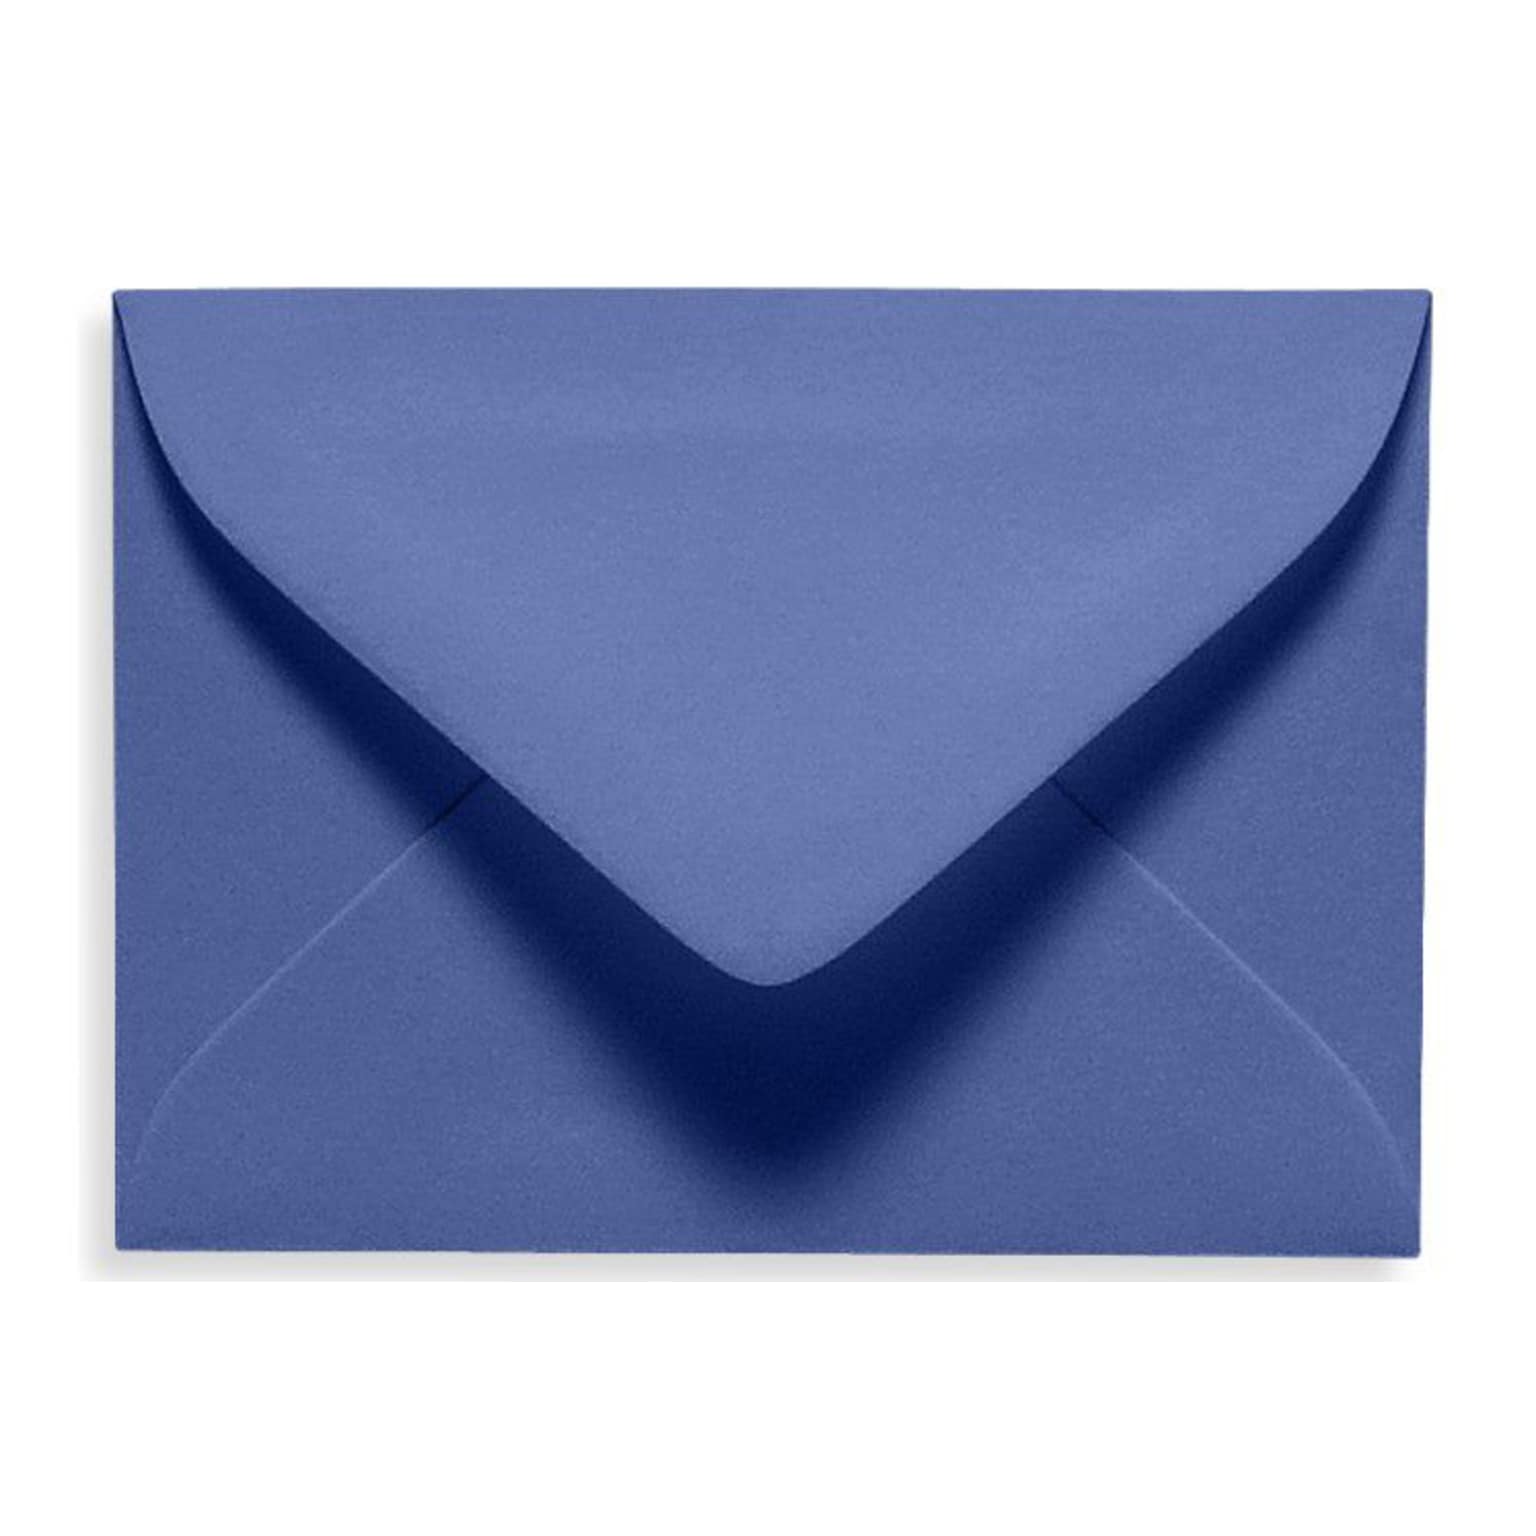 LUX® 70lb 2 11/16x3 11/16 #17 Mini Envelopes W/Glue, Boardwalk Blue, 500/BX